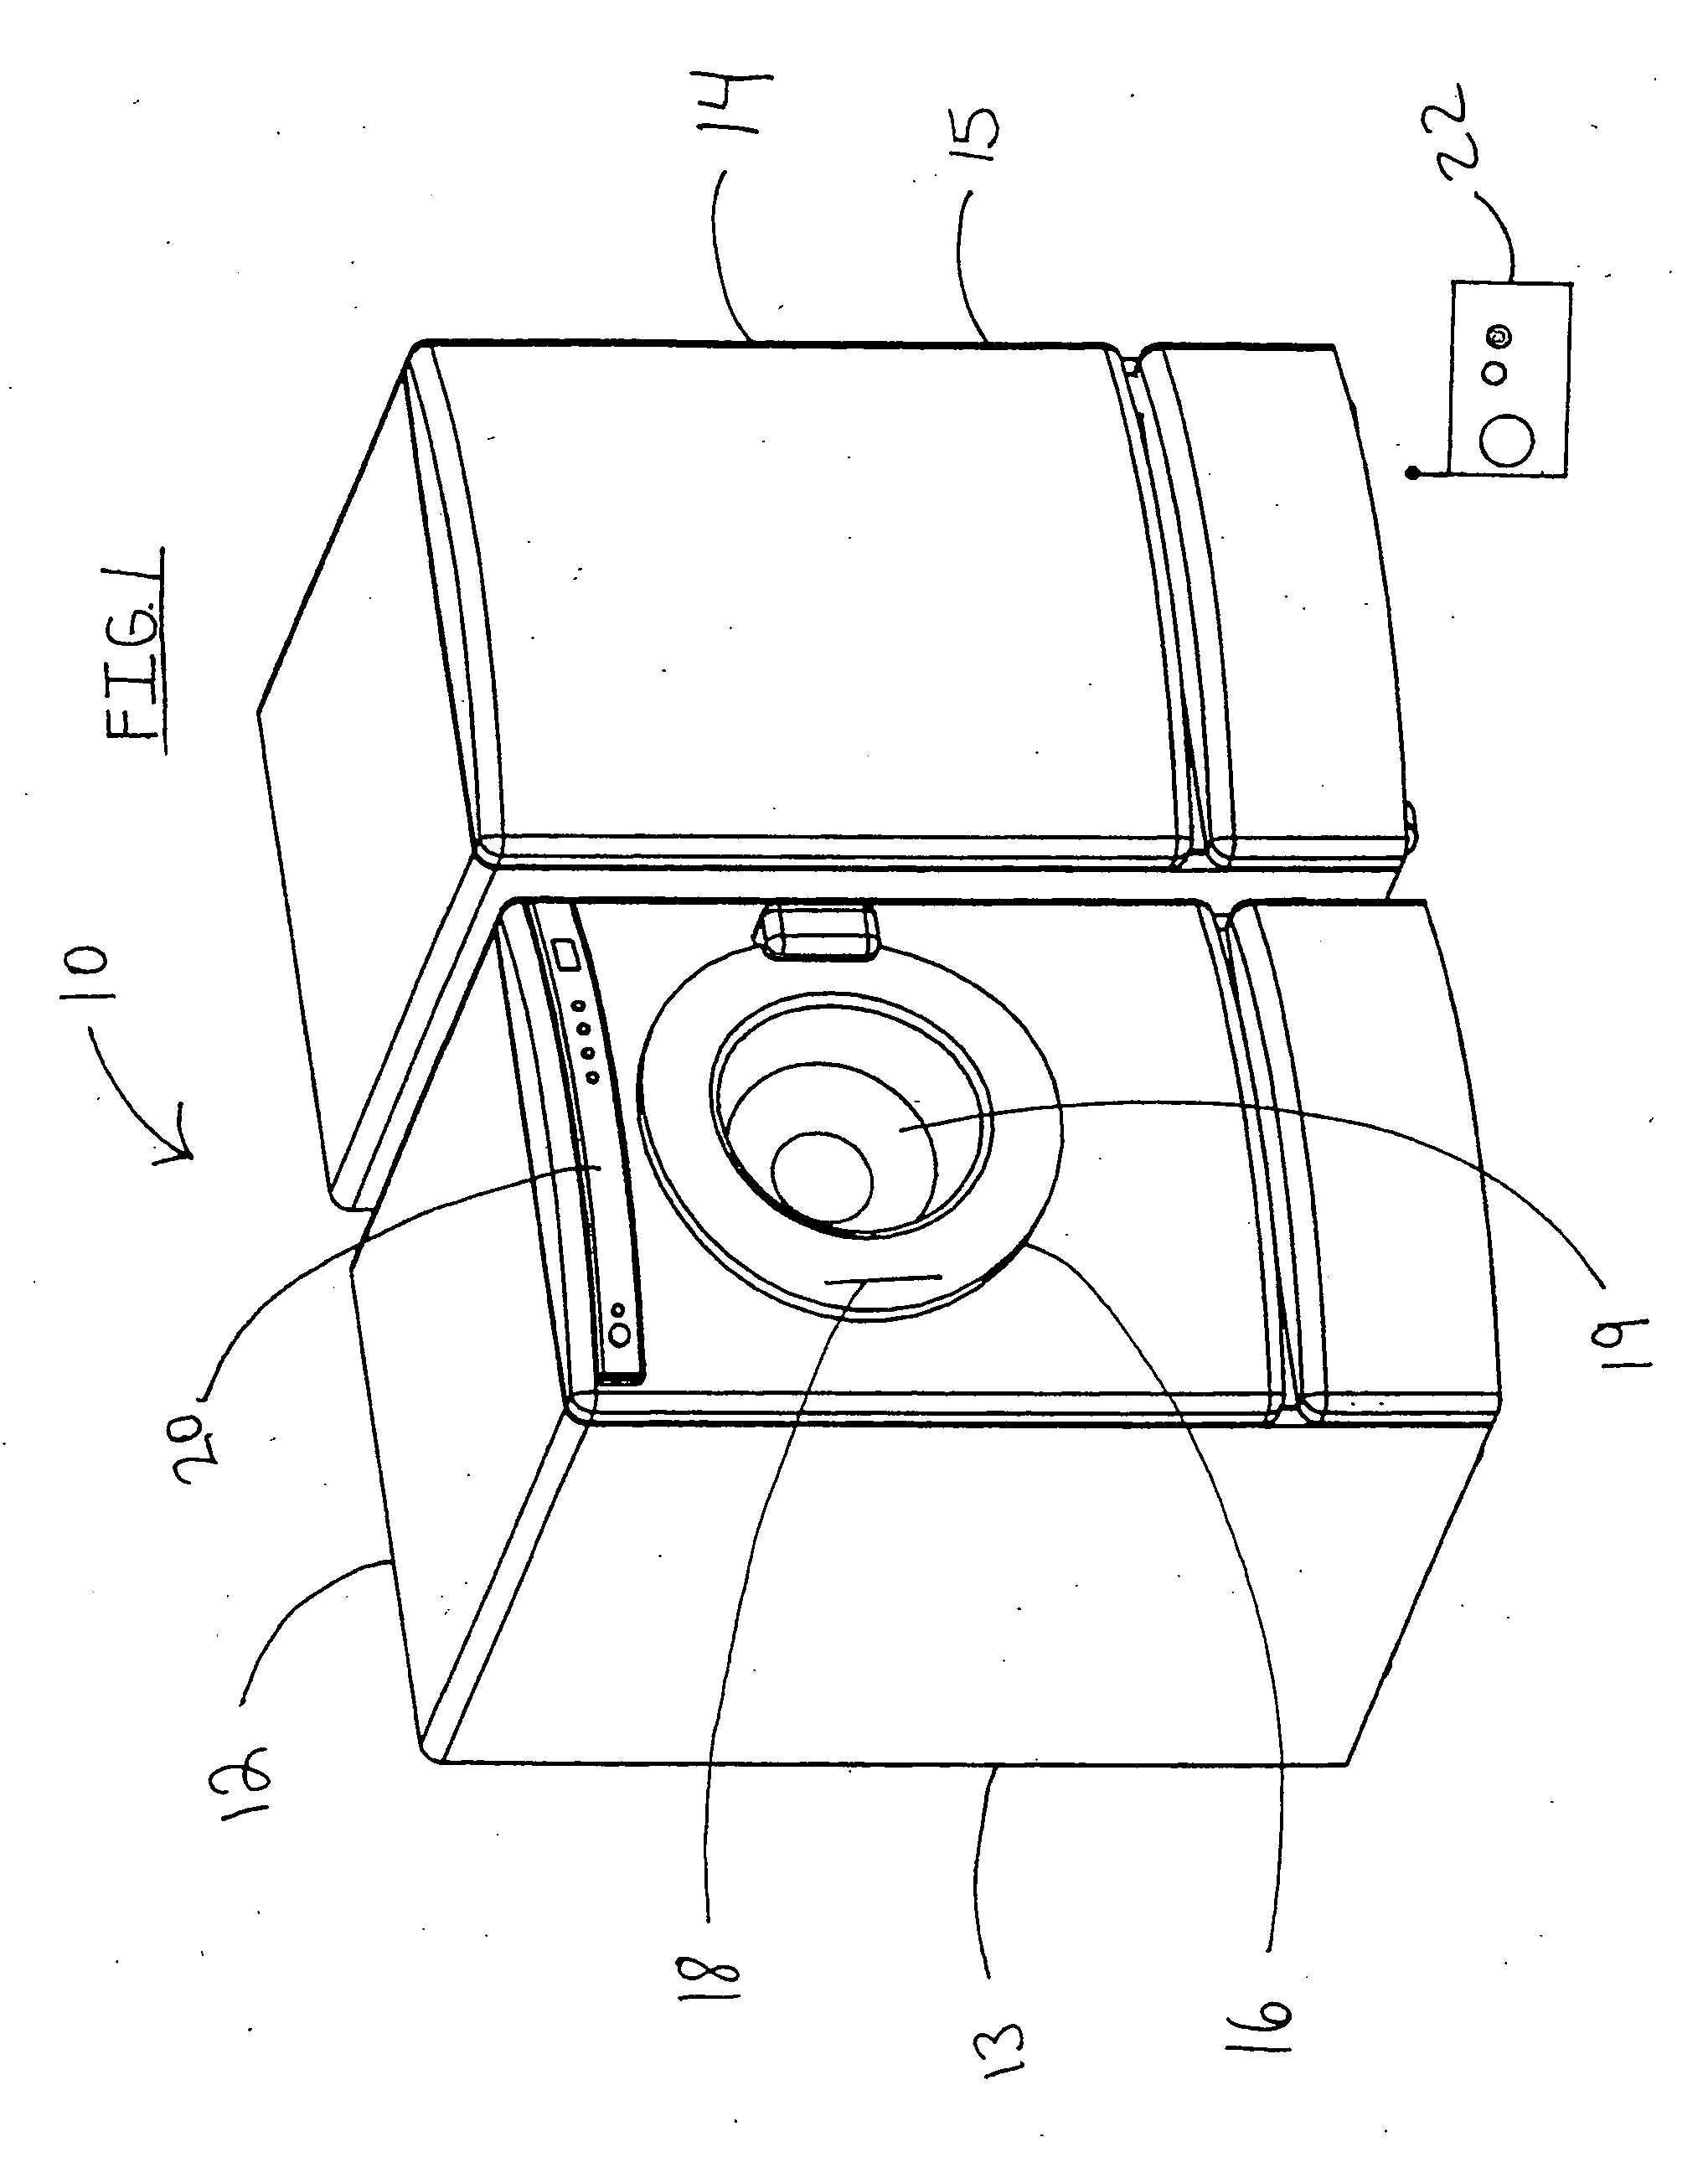 Non-aqueous washing apparatus and method